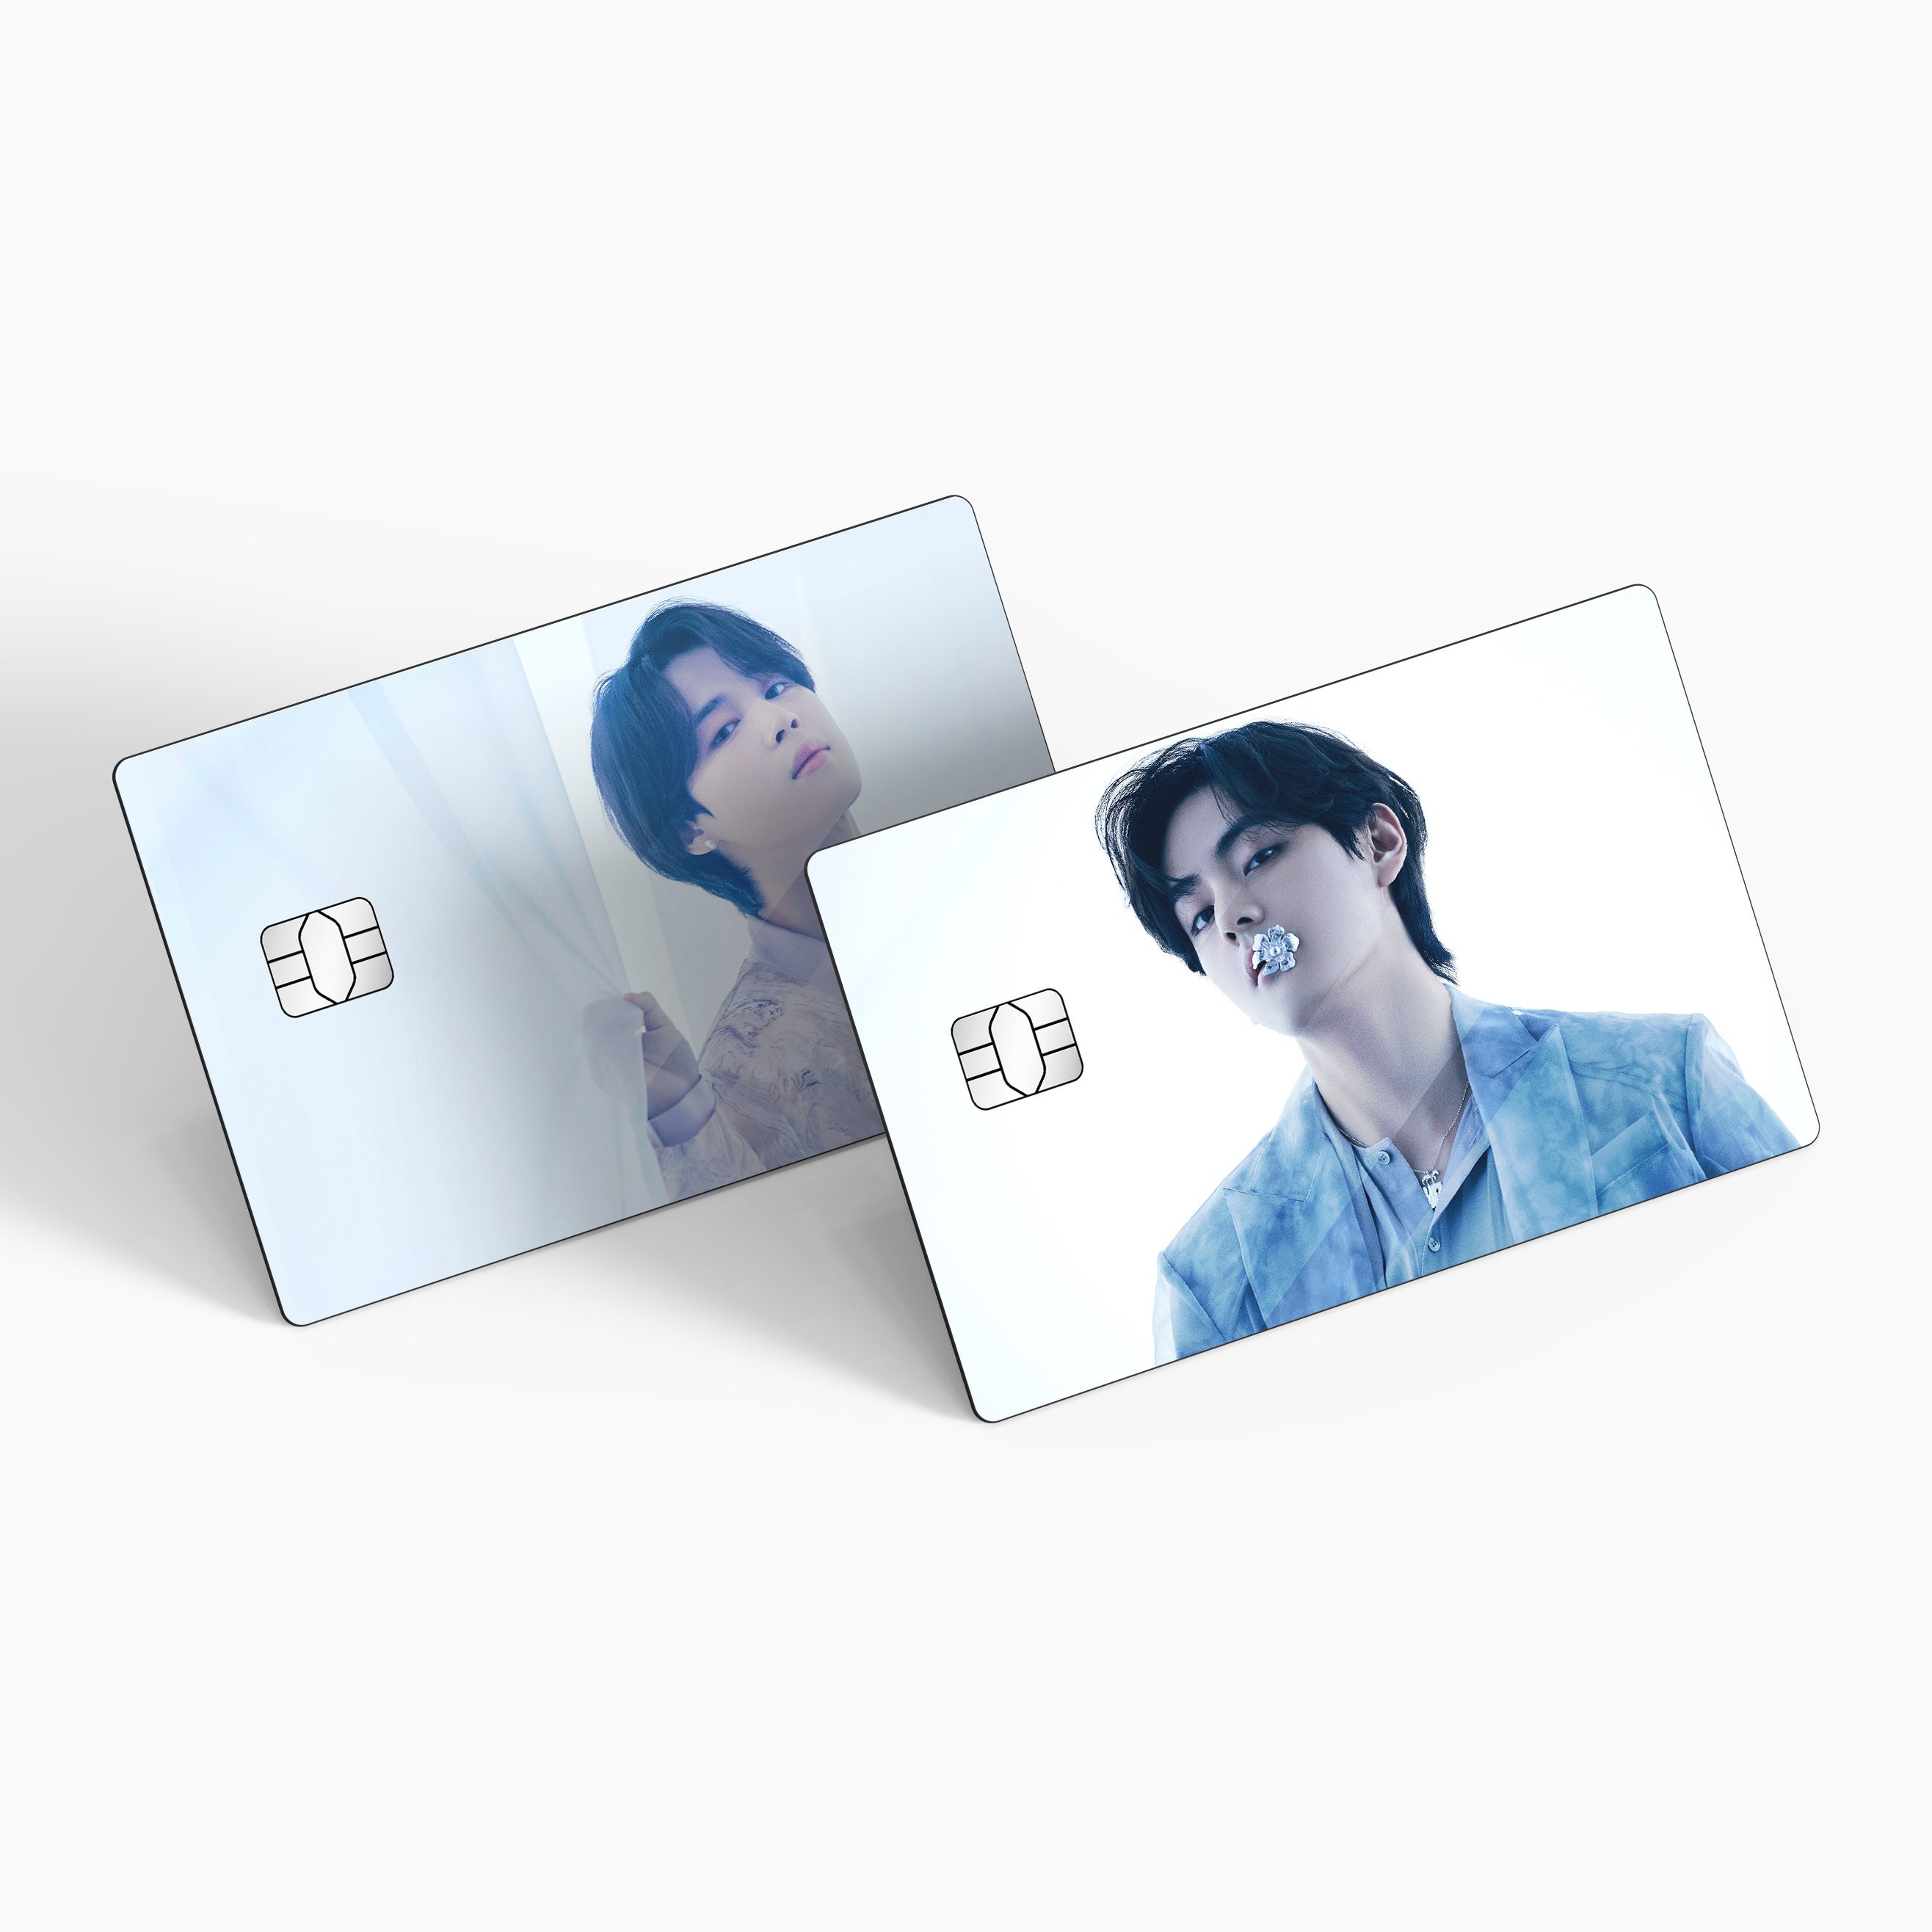 Stickers Carte Bancaire BTS